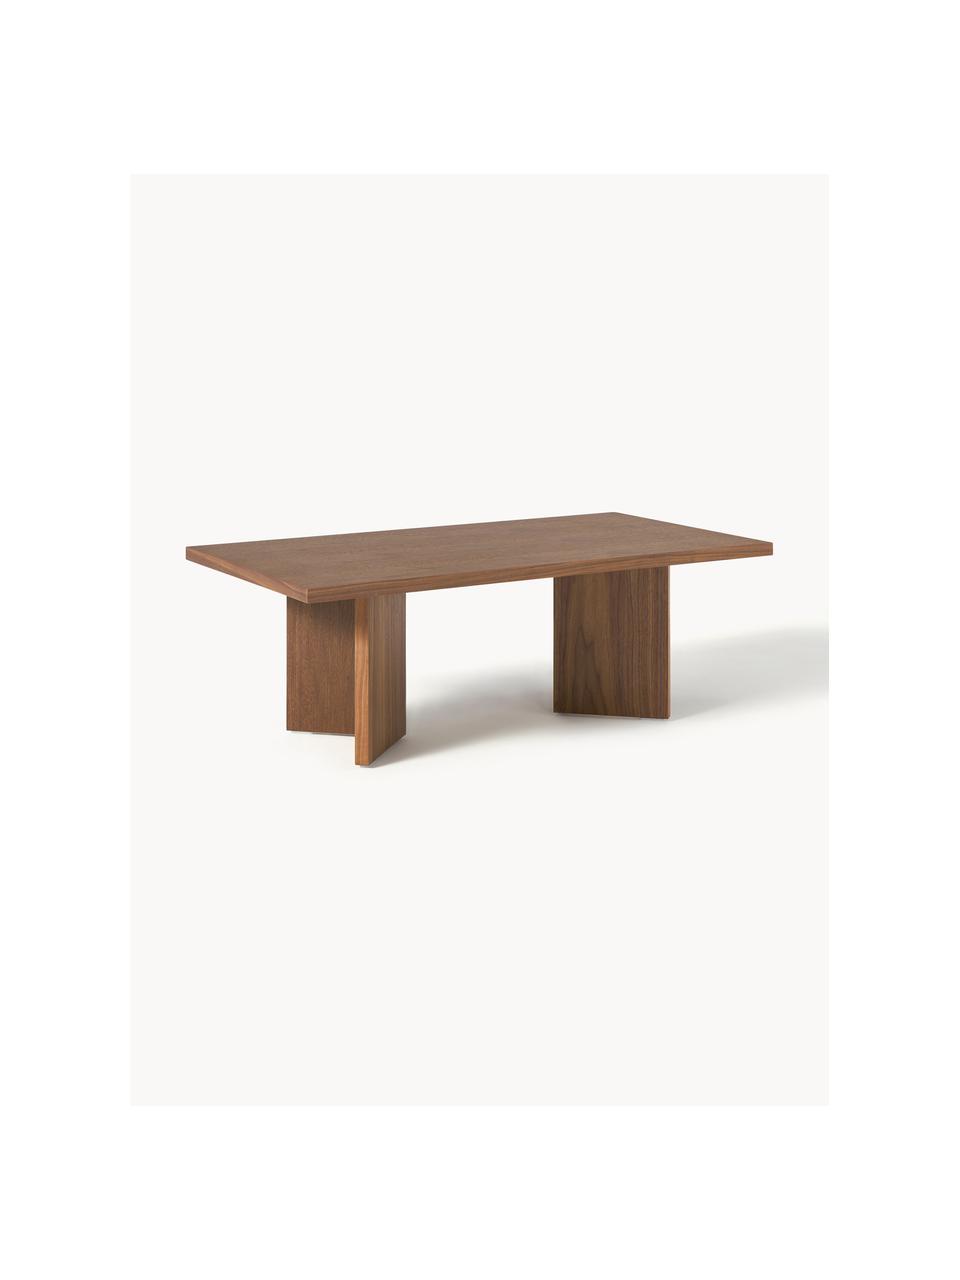 Drevený konferenčný stolík Toni, MDF-doska strednej hustoty s dyhou z orechového dreva, lakované, Orechové drevo, Š 100 x D 55 cm